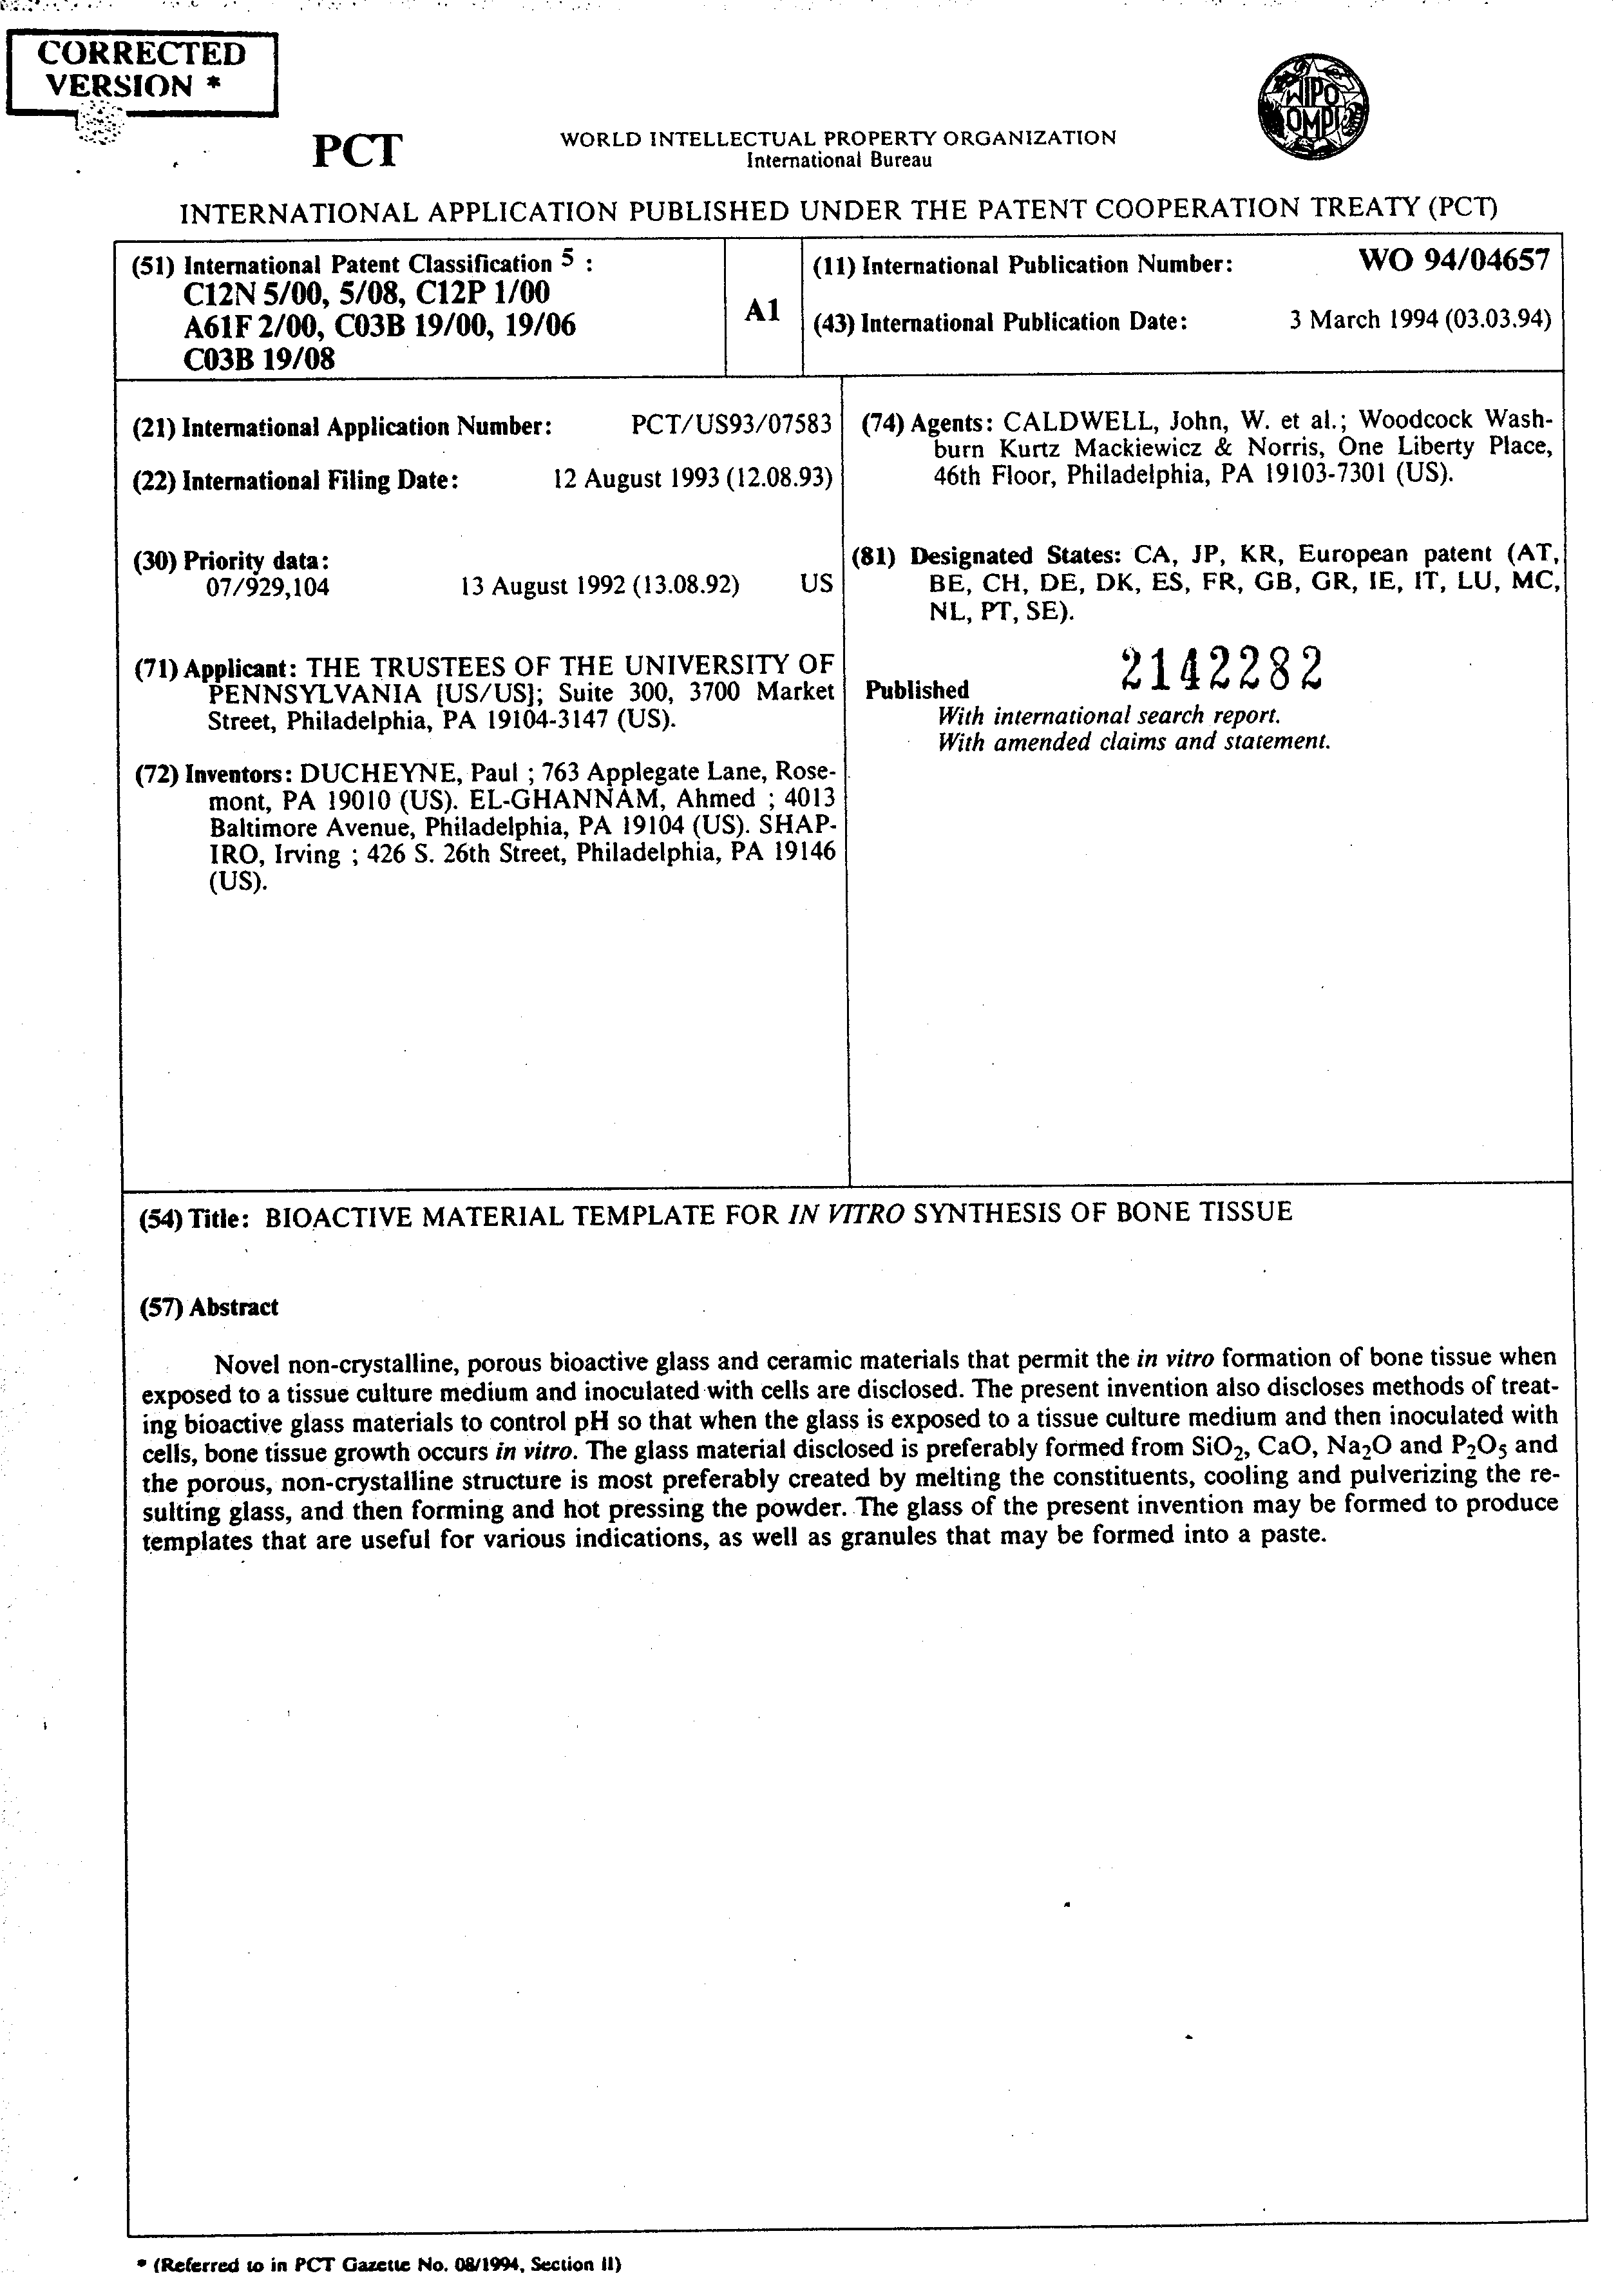 Document de brevet canadien 2142282. Abr%C3%A9g%C3%A9 19941216. Image 1 de 1